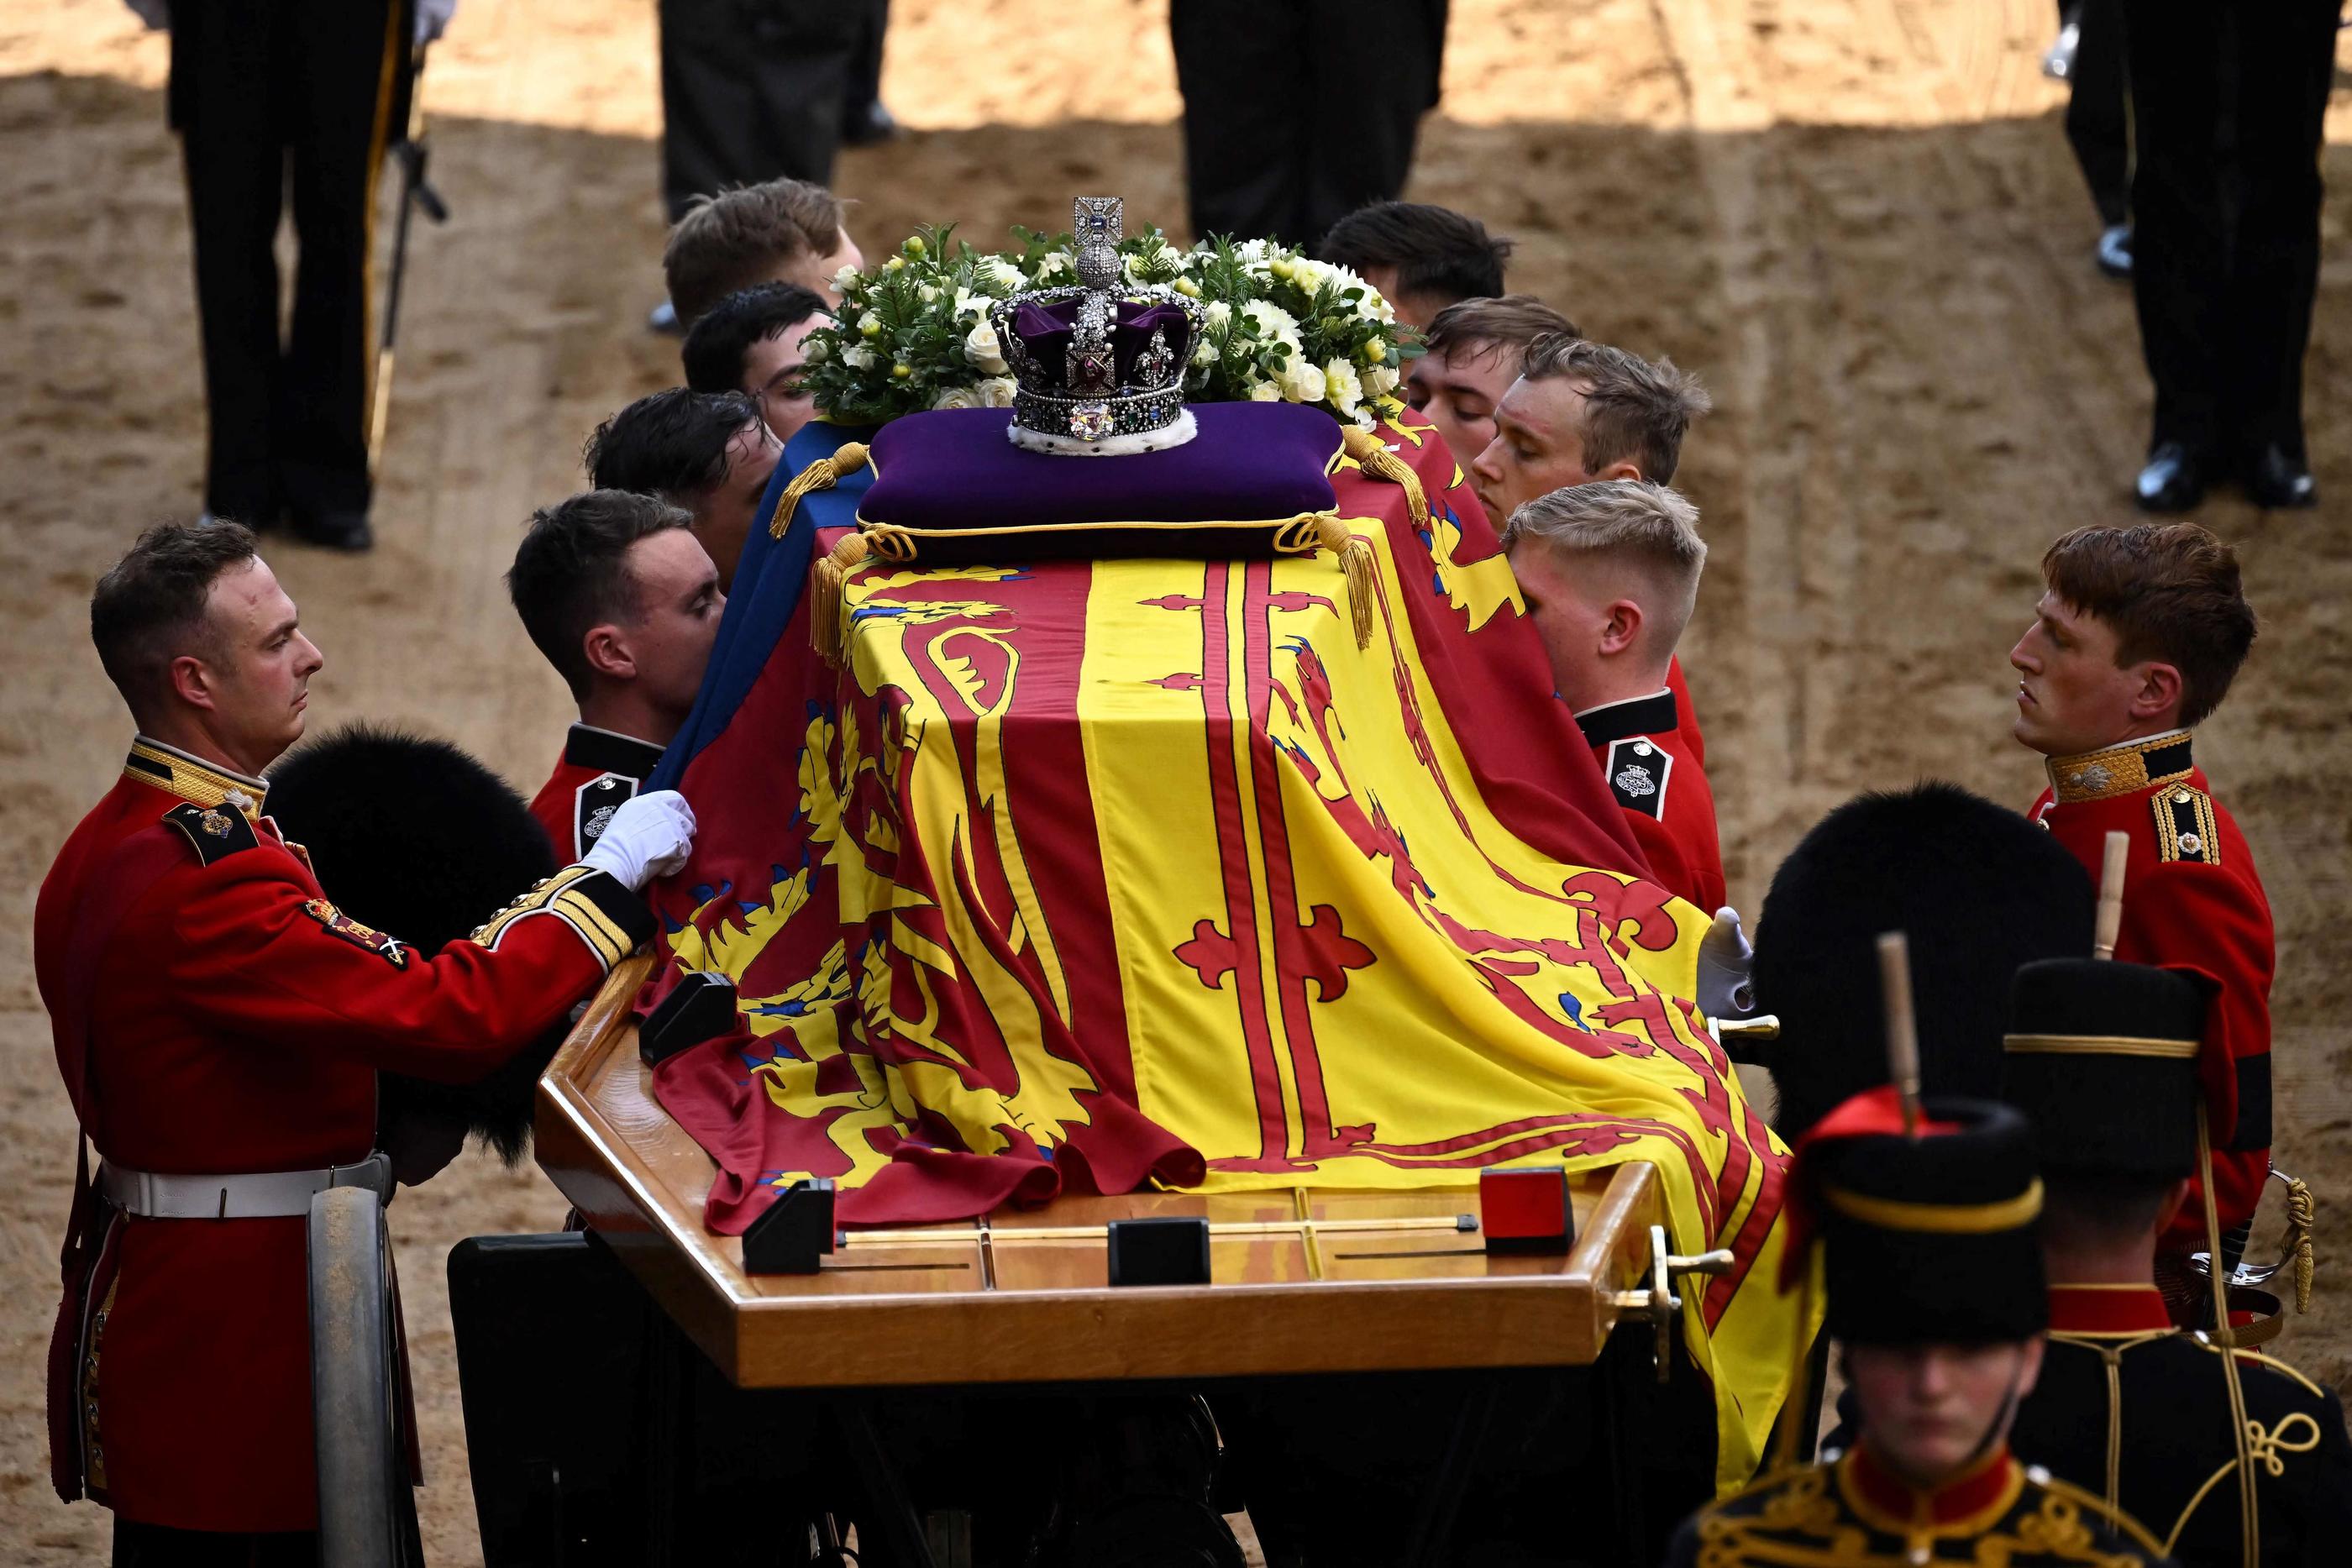 La procession royale est terminée et le cercueil fait son entrée dans le palais de Westminster. AFP/Ben Stansall